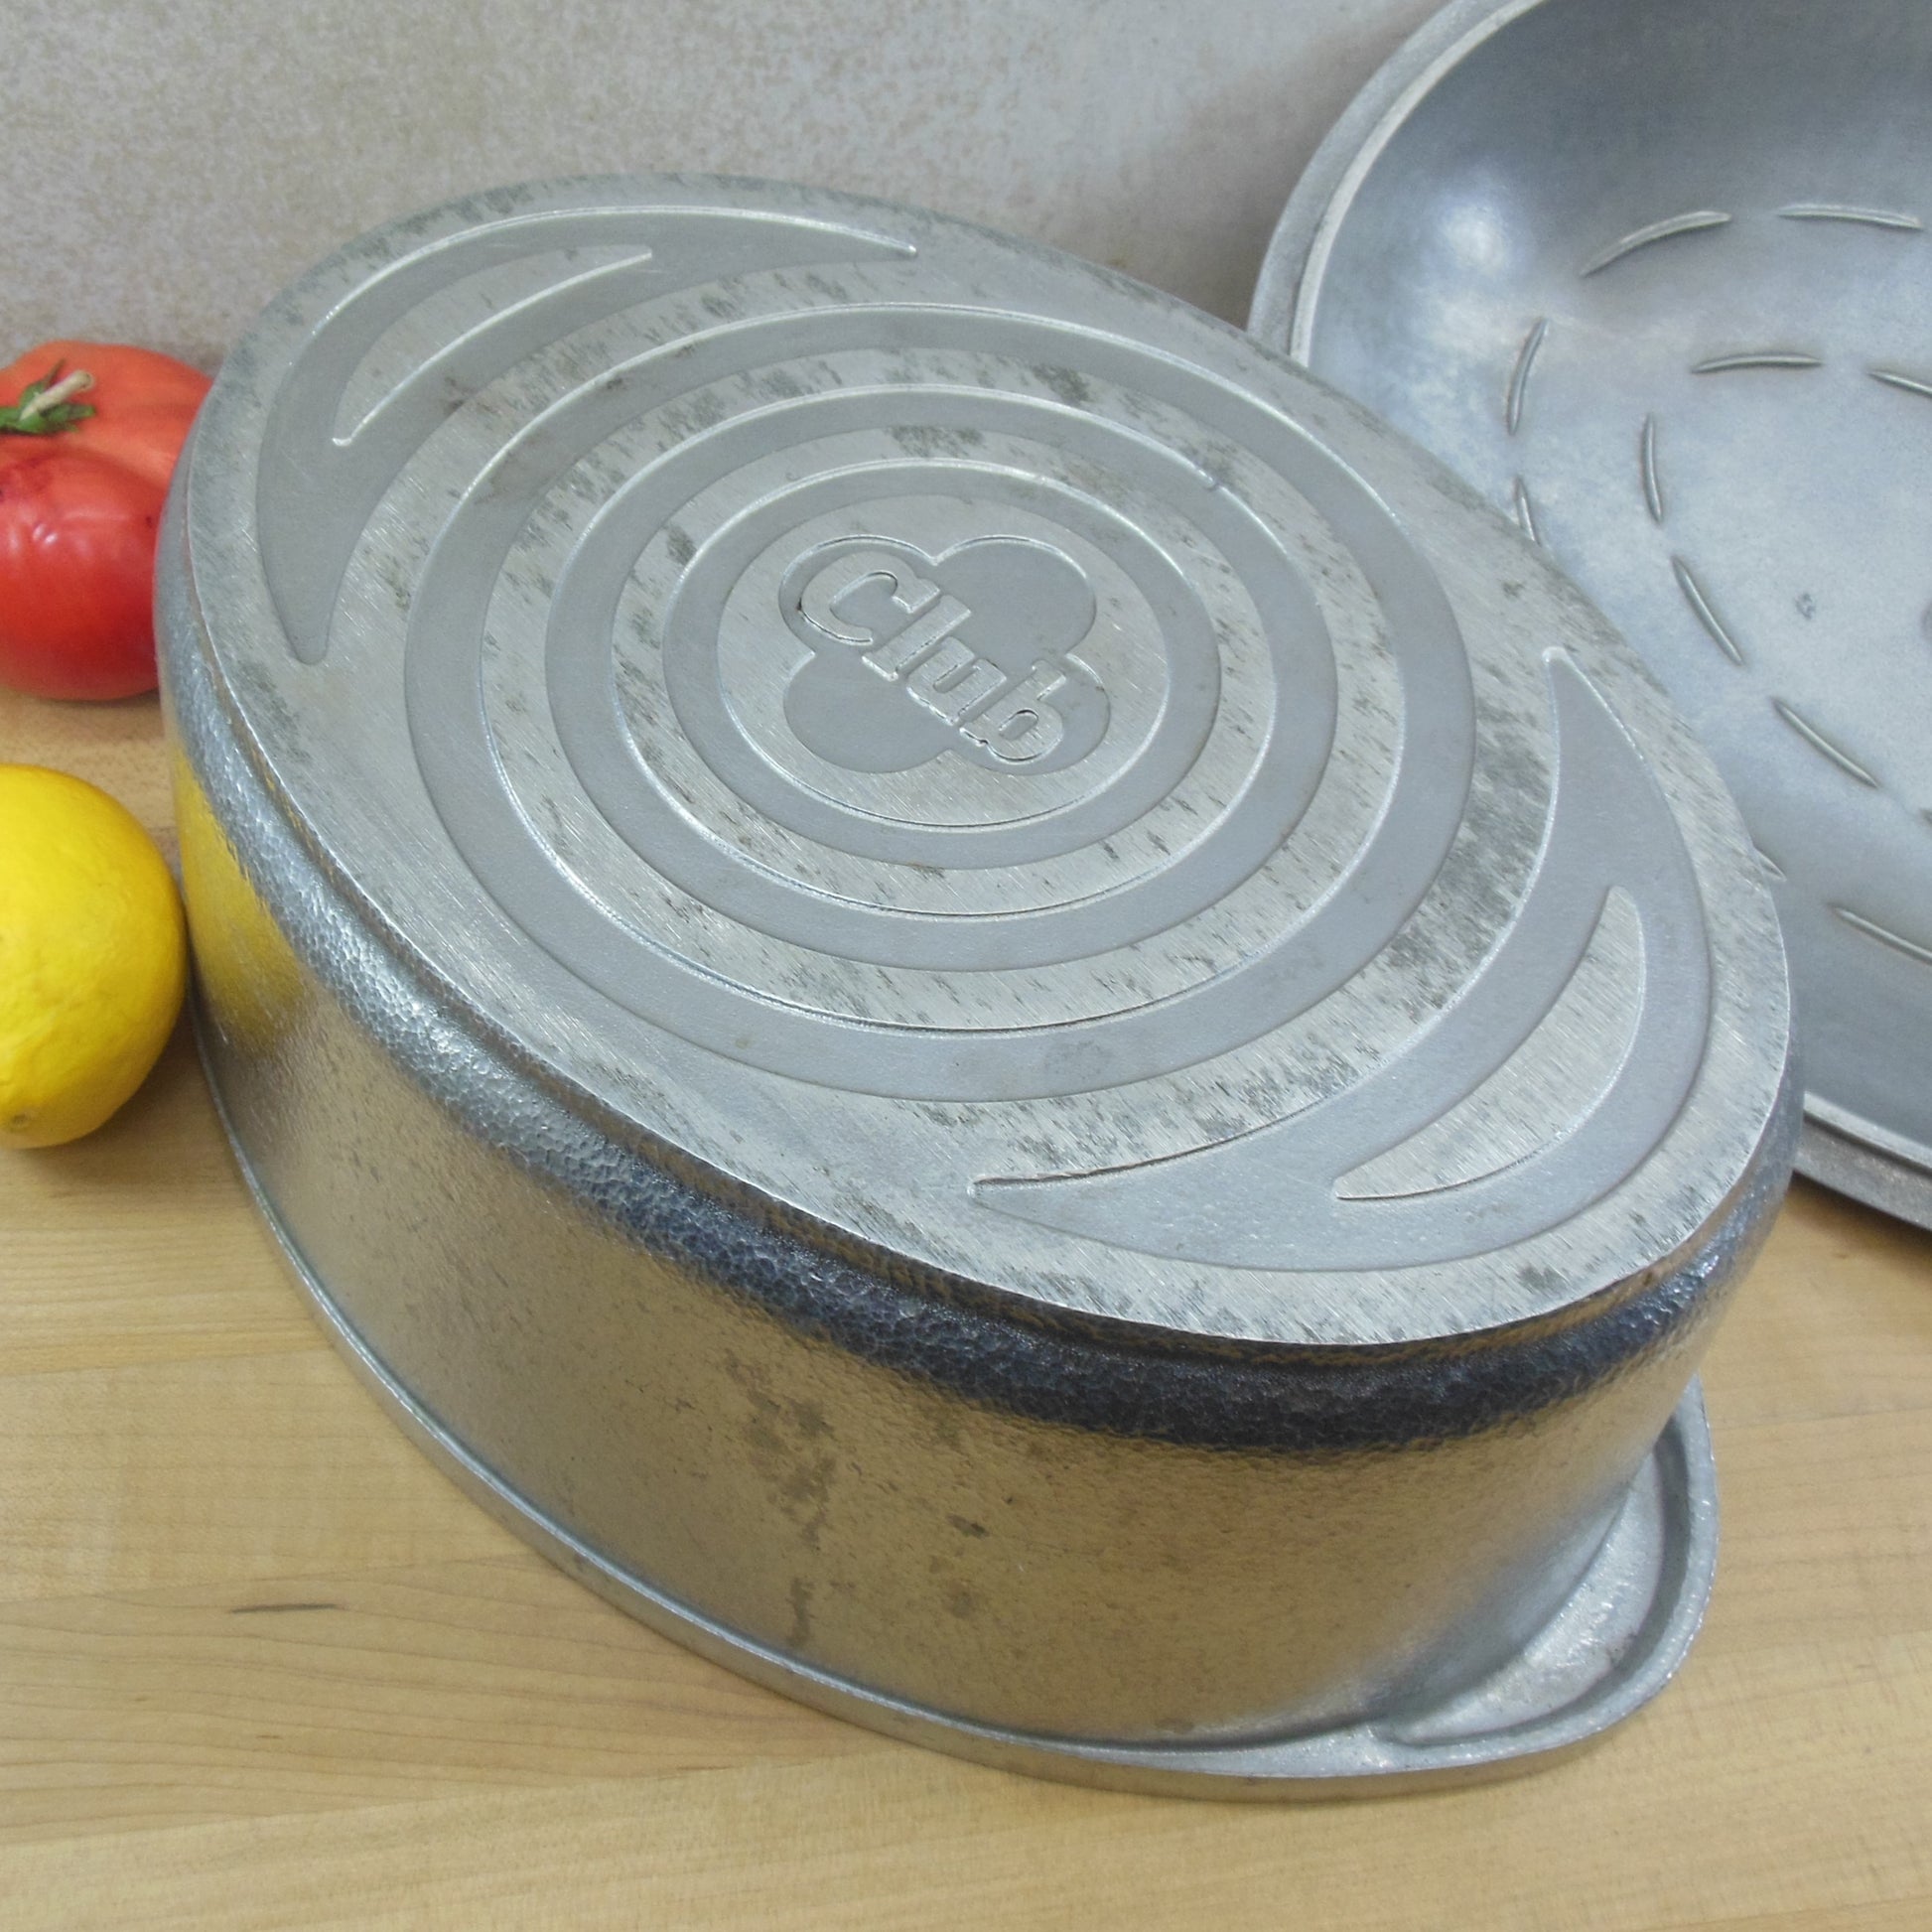 Club Aluminum Cookware Hammercraft 6 Quart Oval Roaster Pot Rined Bottom